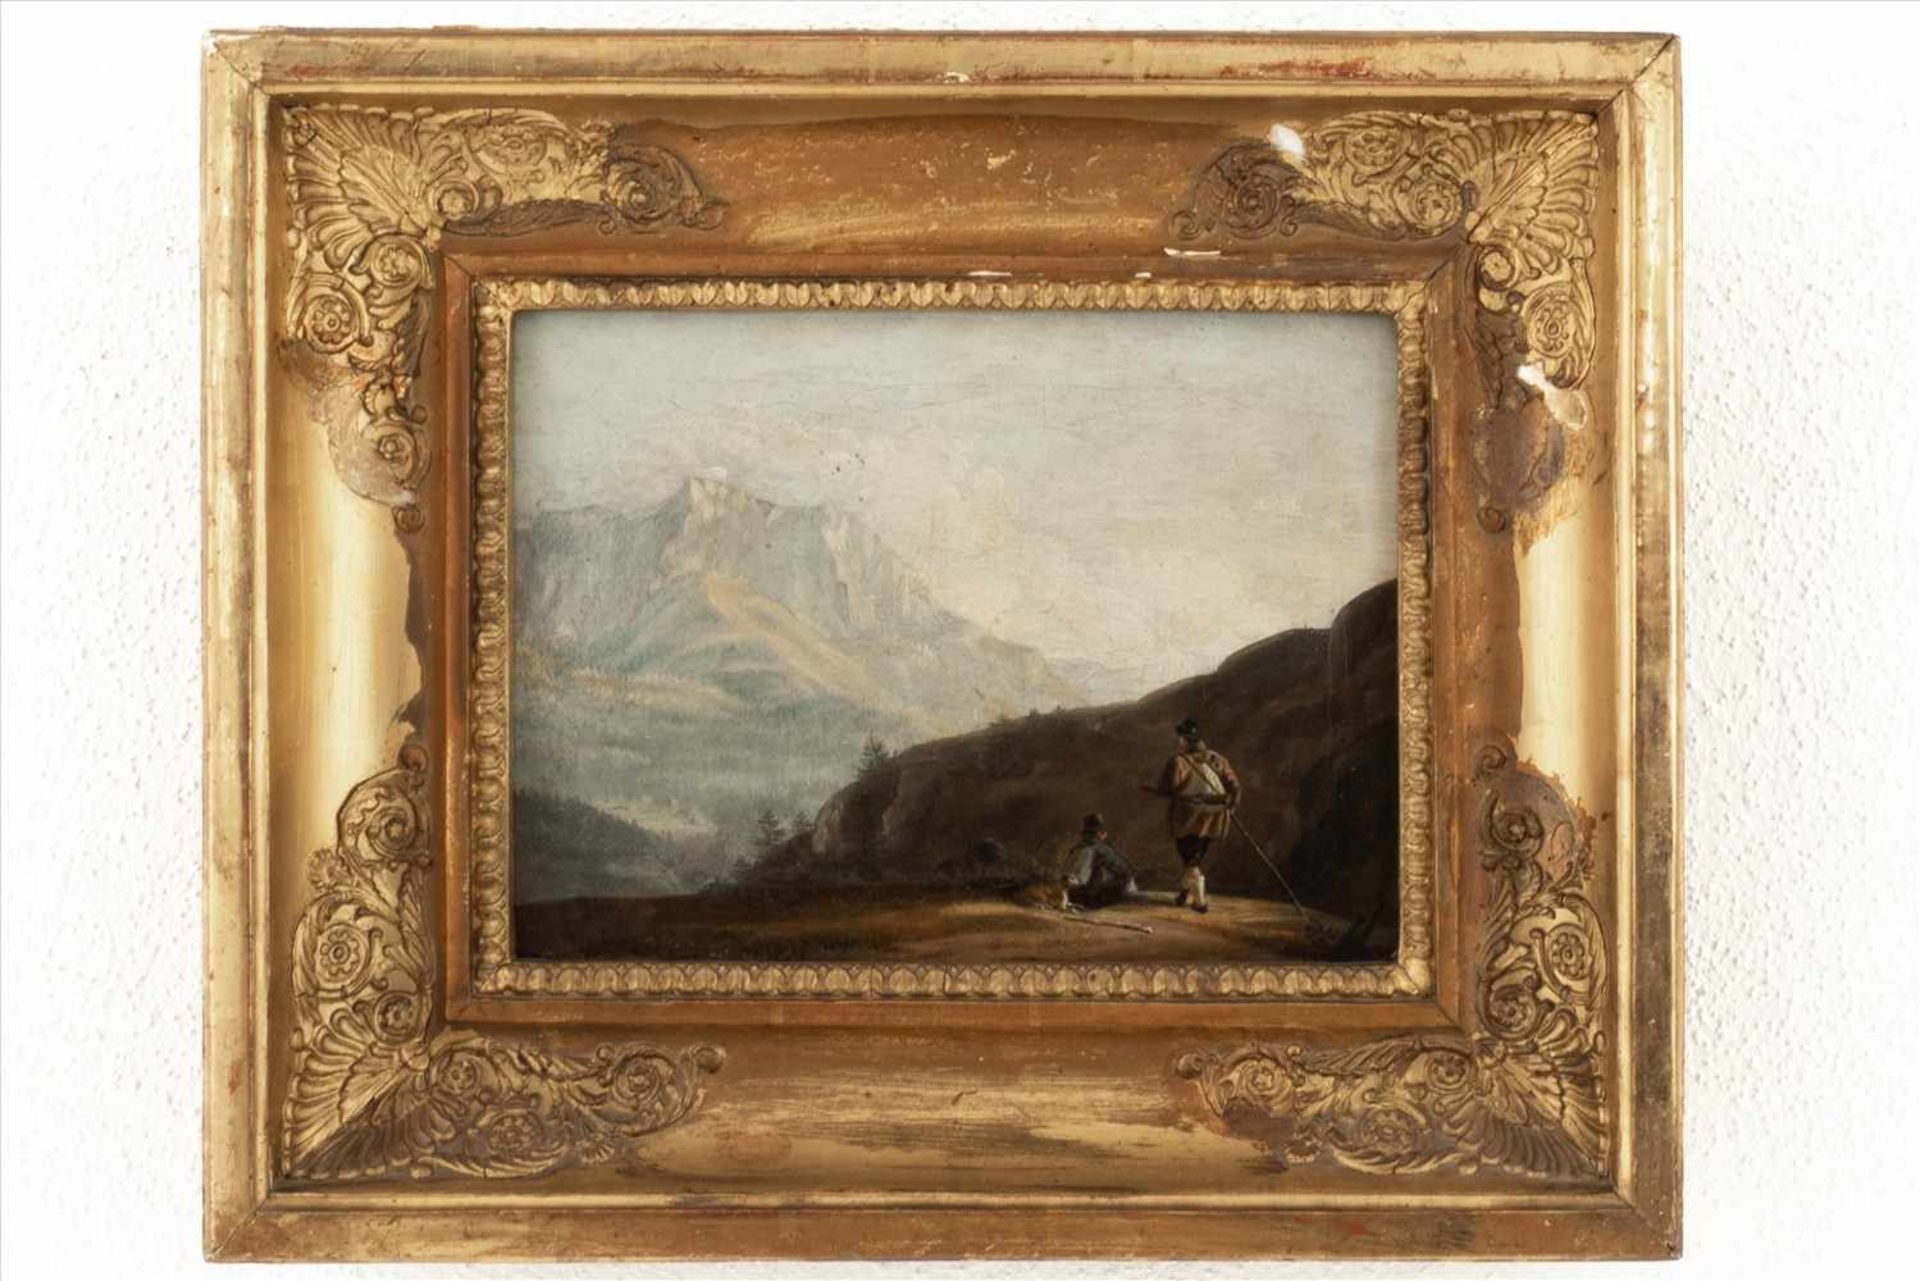 Biedermeier Gemälde "Landschaft"Öl/Lwd. um 1820, Rahmen rest. bed. Maße: H31 x B37cm.Biedermeier